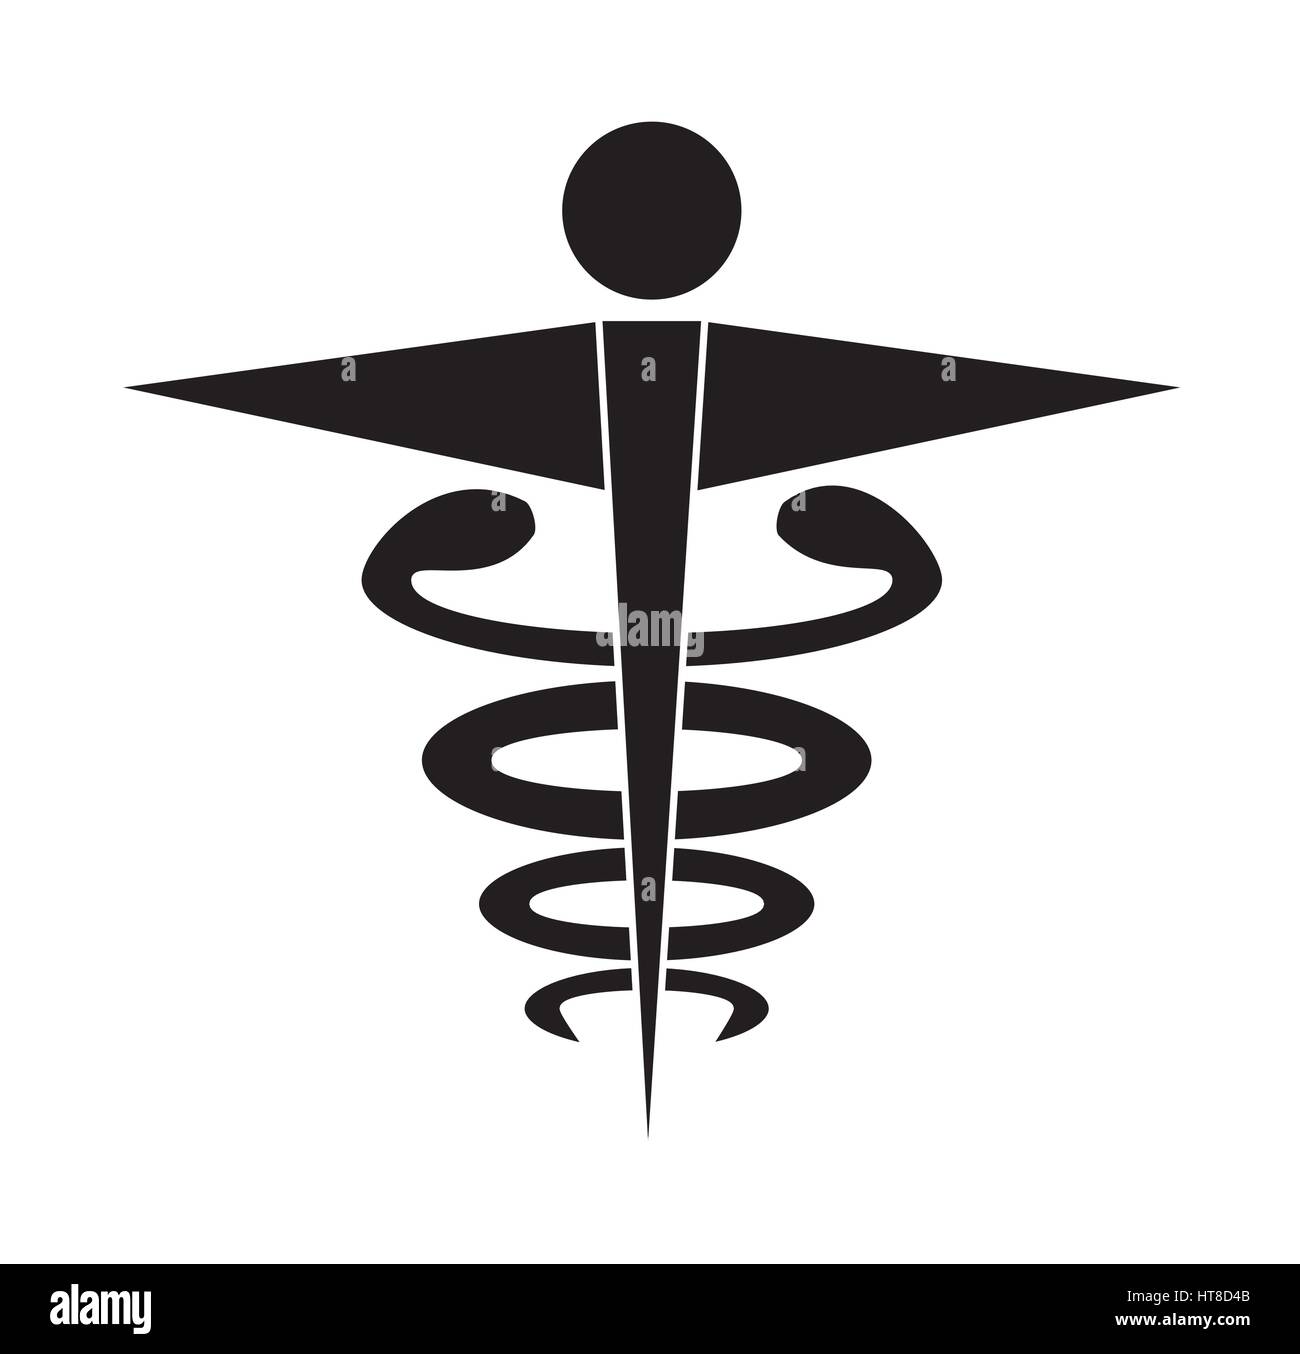 Le noir et blanc caducée symbole médical vecteur icône isolé sur fond blanc. Icônes médicale. Illustration de Vecteur